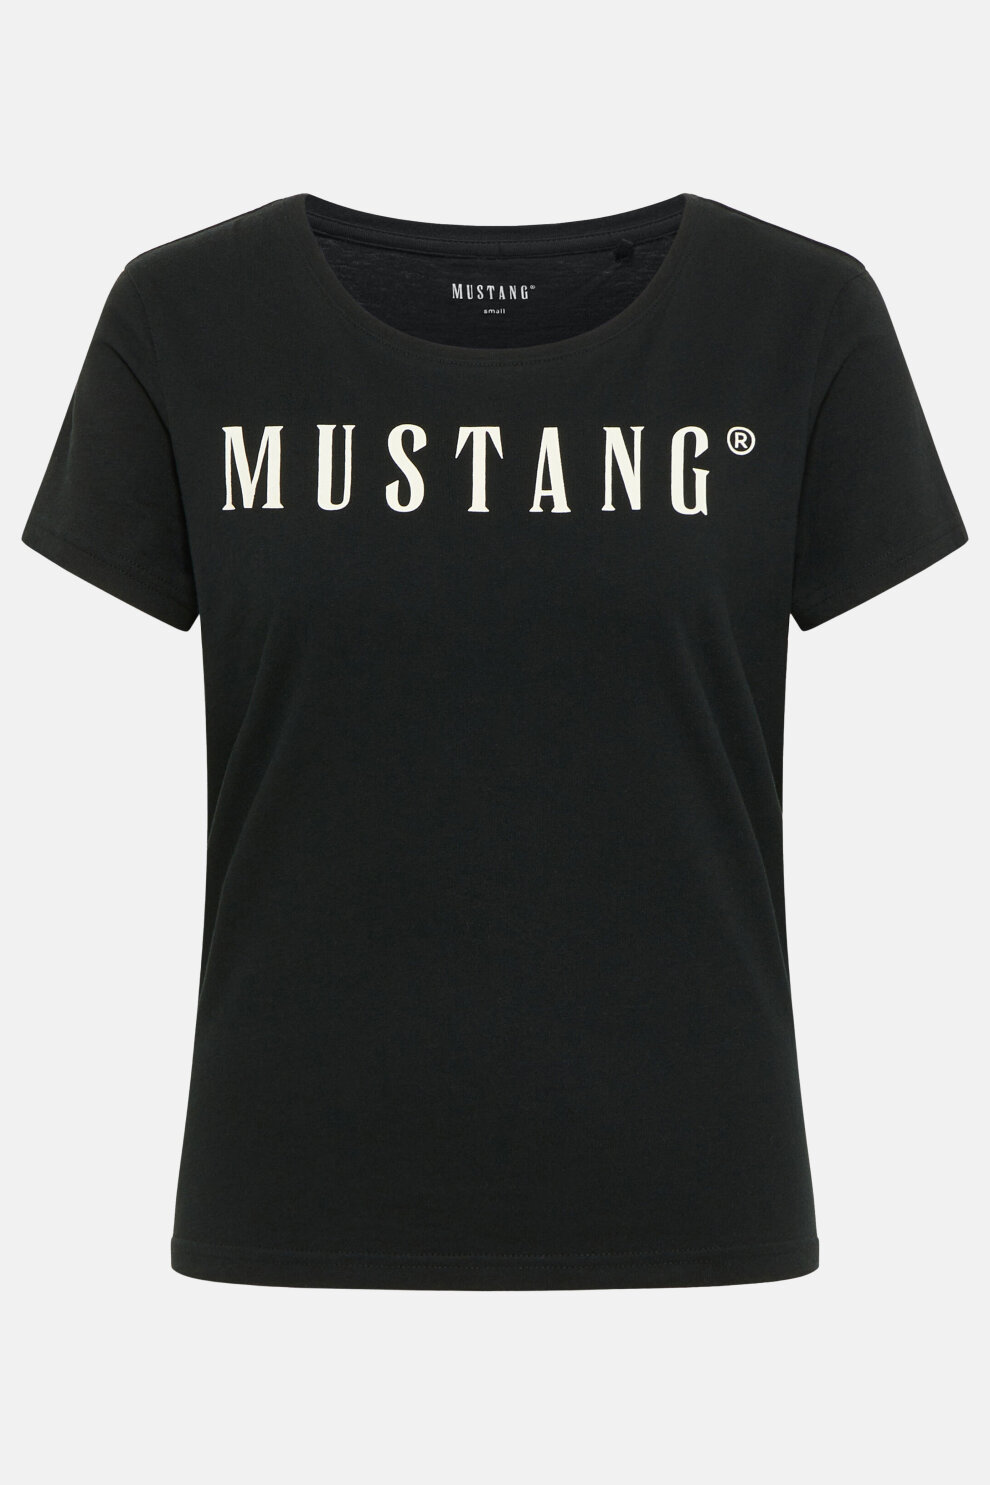 ŽENE - Majice - Mustang majica - Kratki rukav - Crna